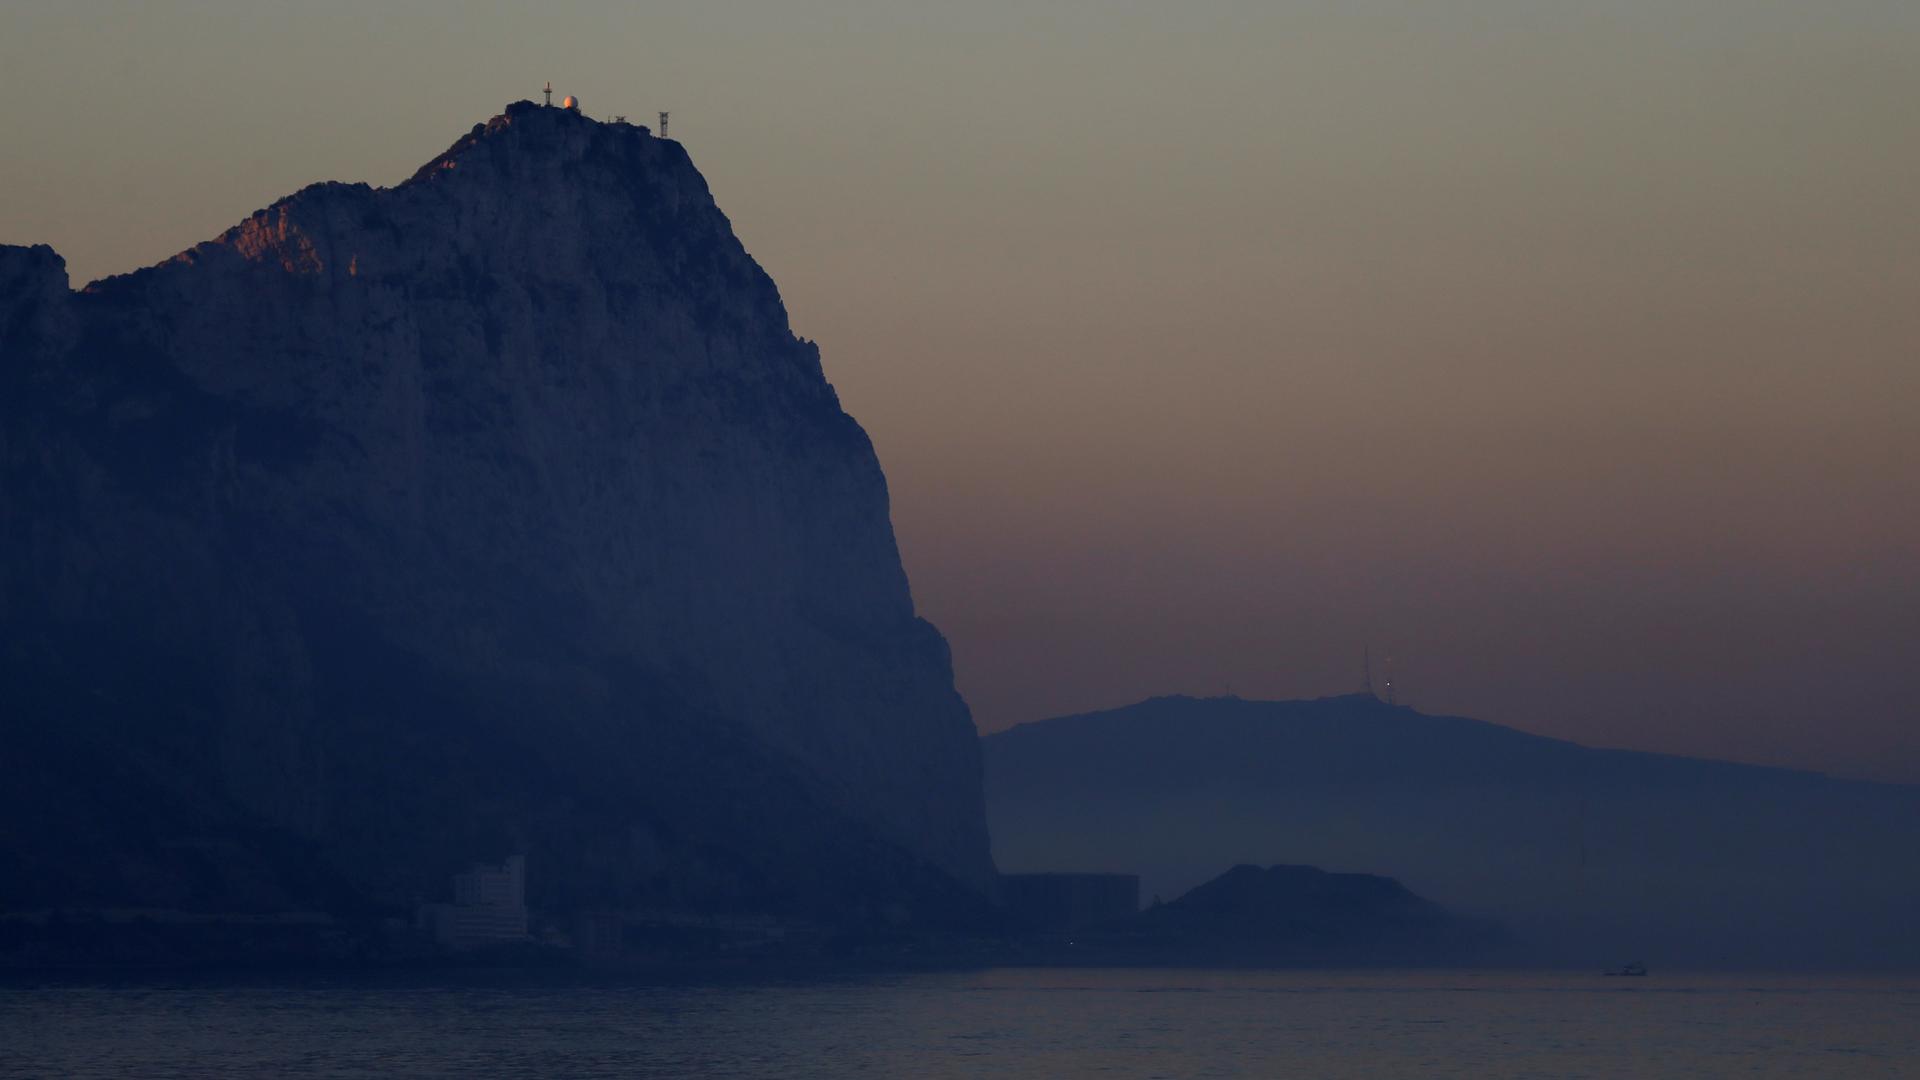 Rock of Gibraltar at dusk